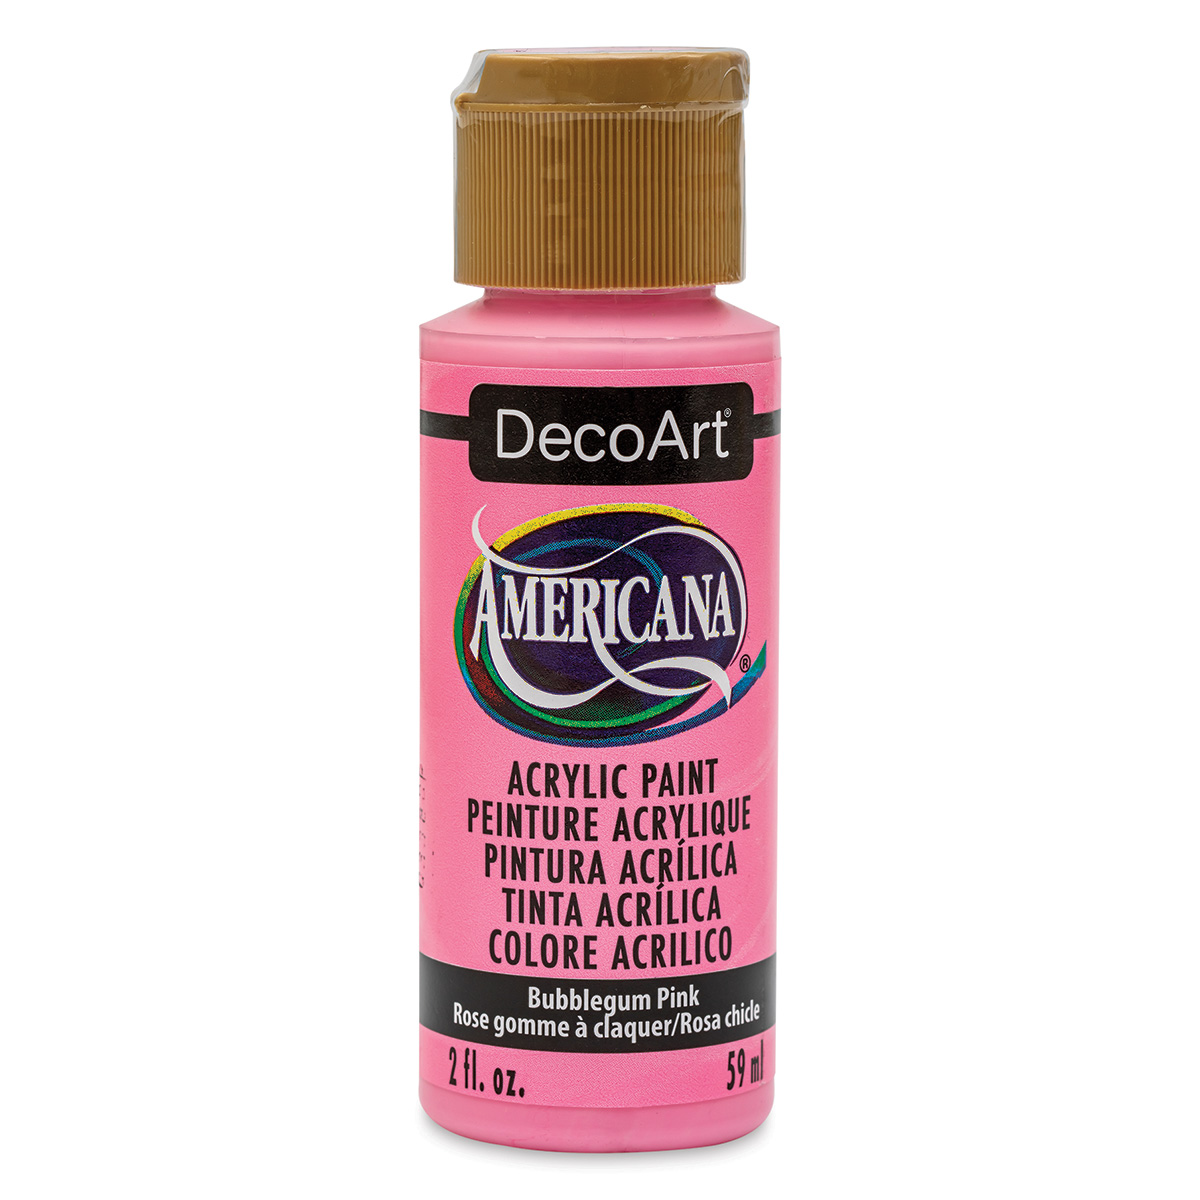 DecoArt Acrylic Paint Bubblegum Pink 8 oz